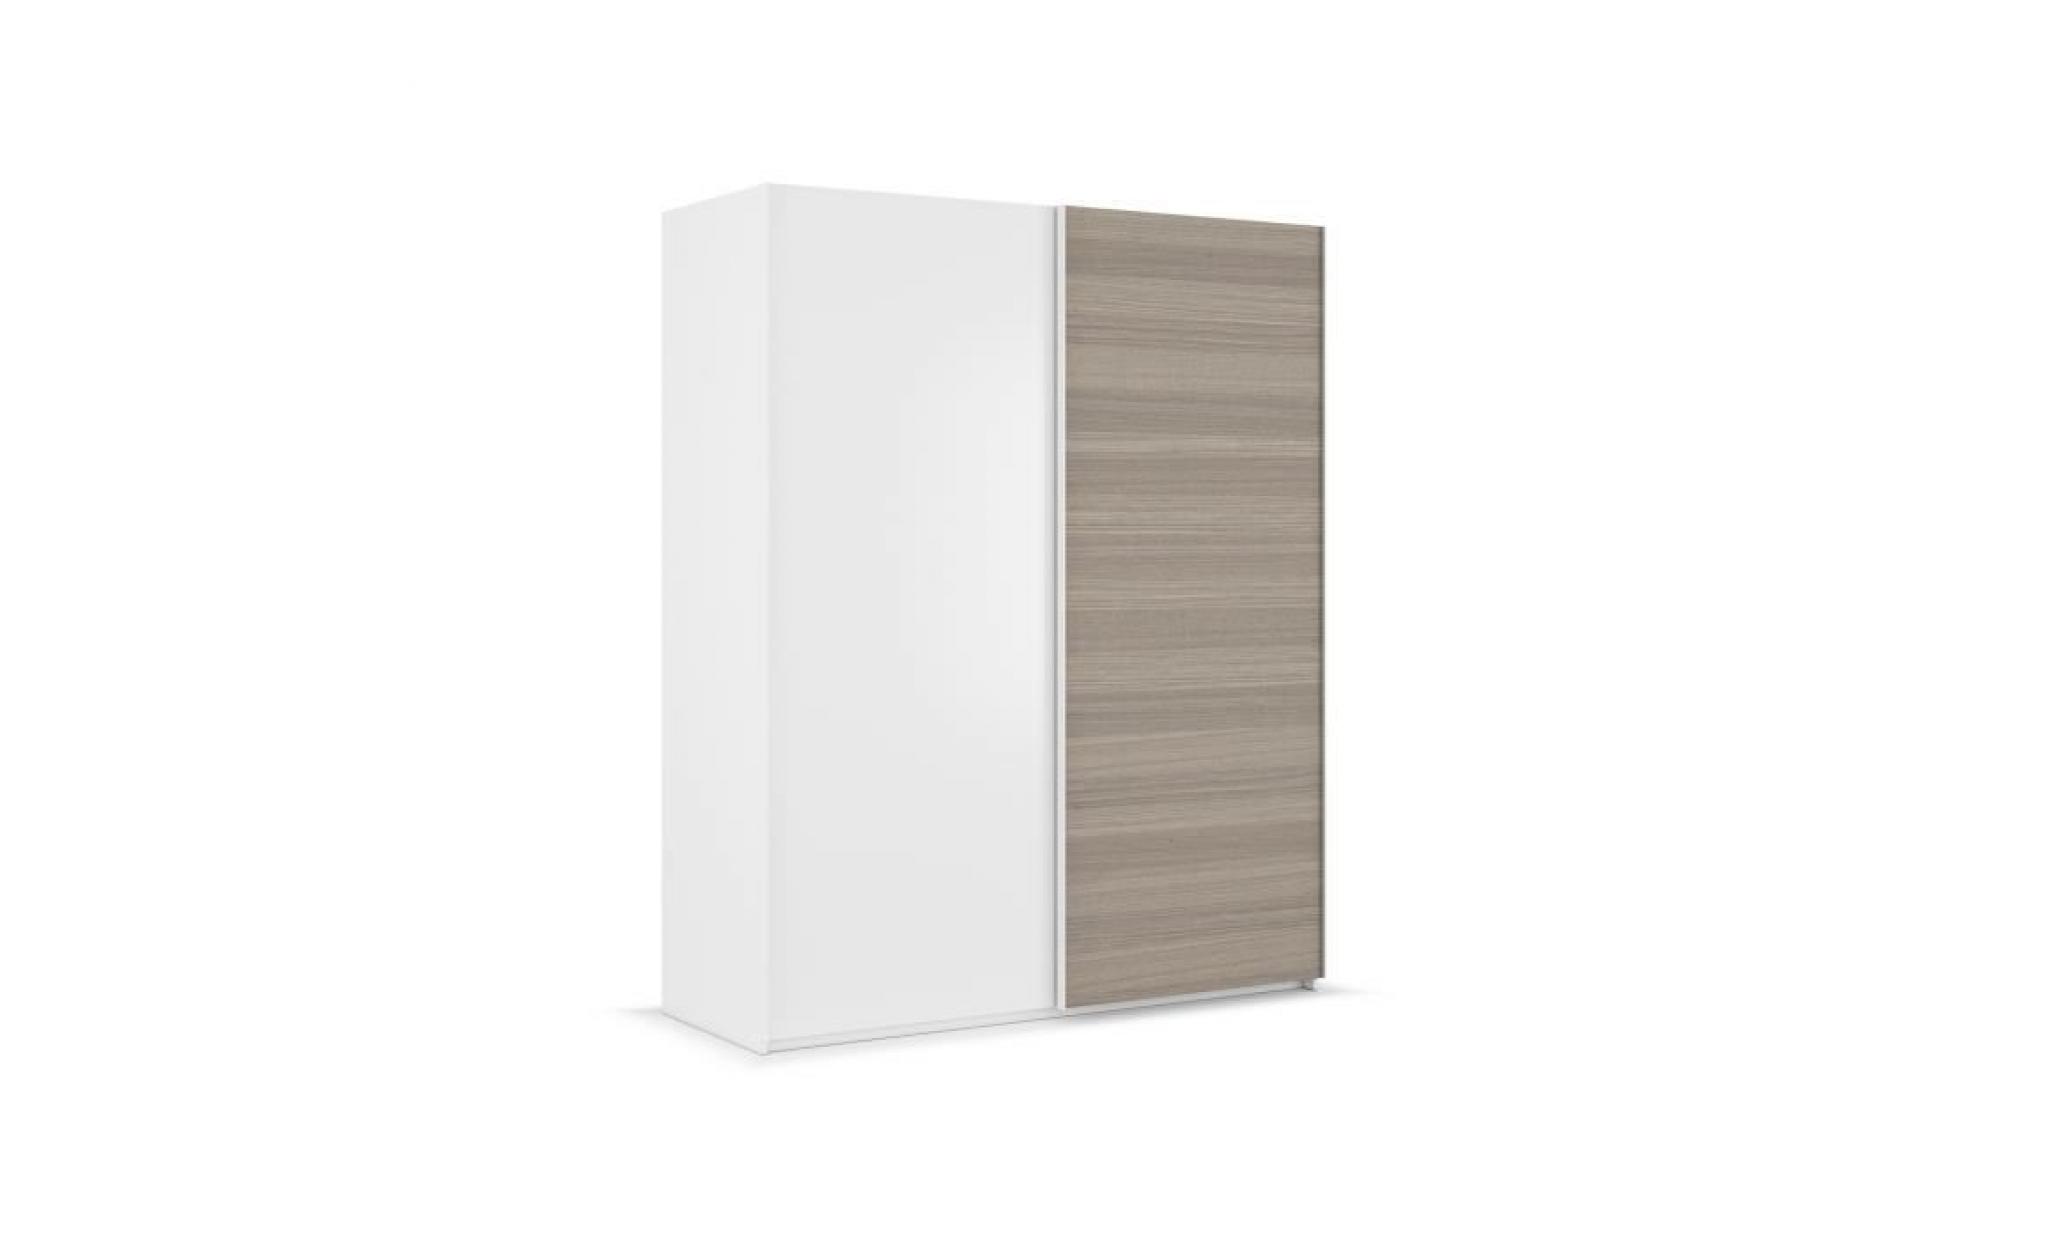 anchorage armoire de chambre   contemporain   décor frêne et blanc brillant   l 150 cm